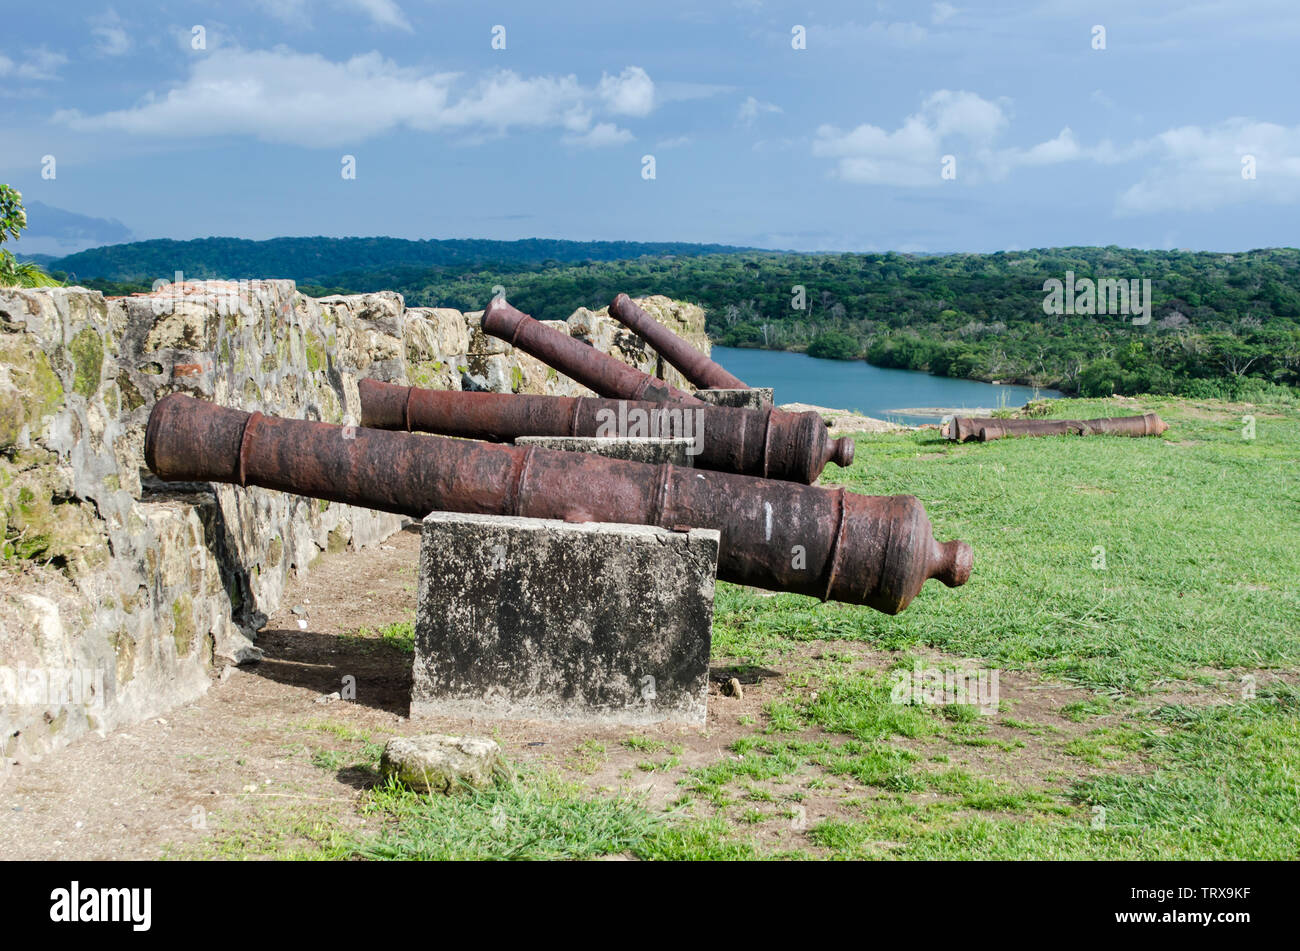 Alte Kanonen in Fort San Lorenzo, alte Kanonen in Fort San Lorenzo, wie sie im Juni 2019 aussahen, bevor die Stätte restauriert wurde Stockfoto